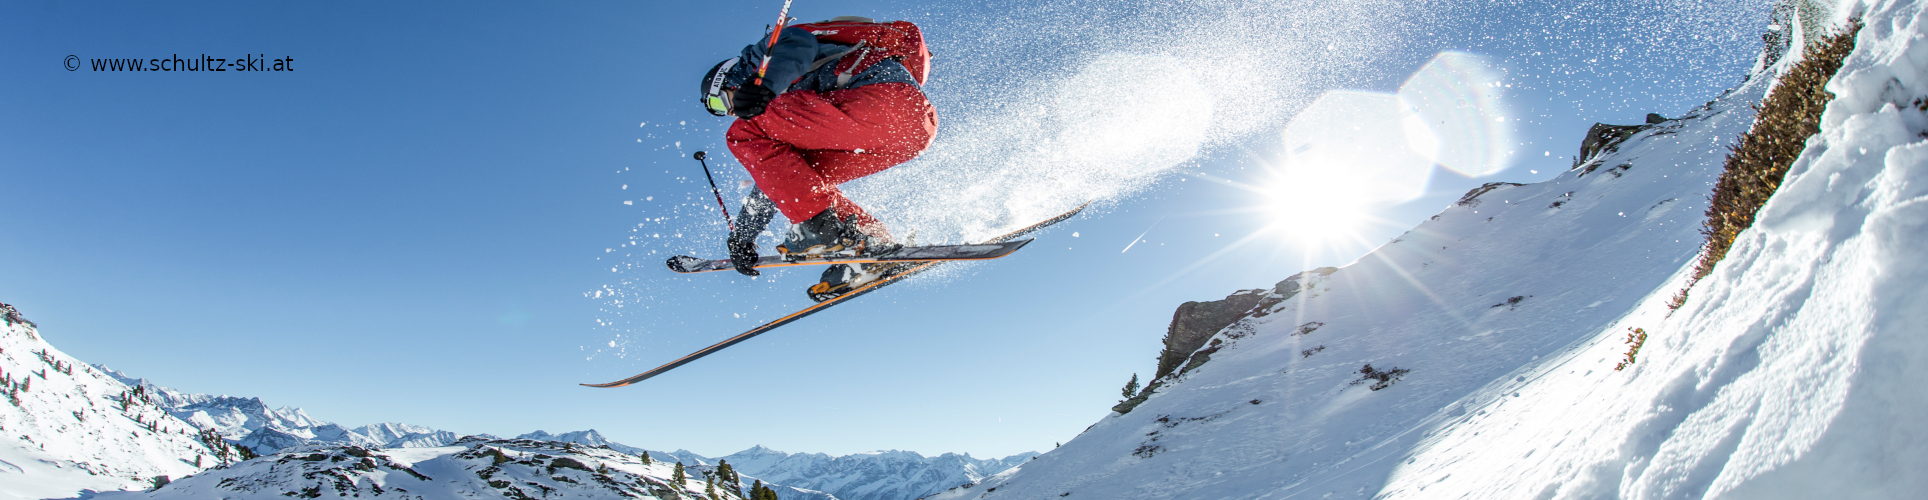 ZILLERTAL – verlängertes Skiwochenende mit 3 Skitagen – in den Weihnachtsferien – Hotel in Strass – ab Mittwoch nachmittag 